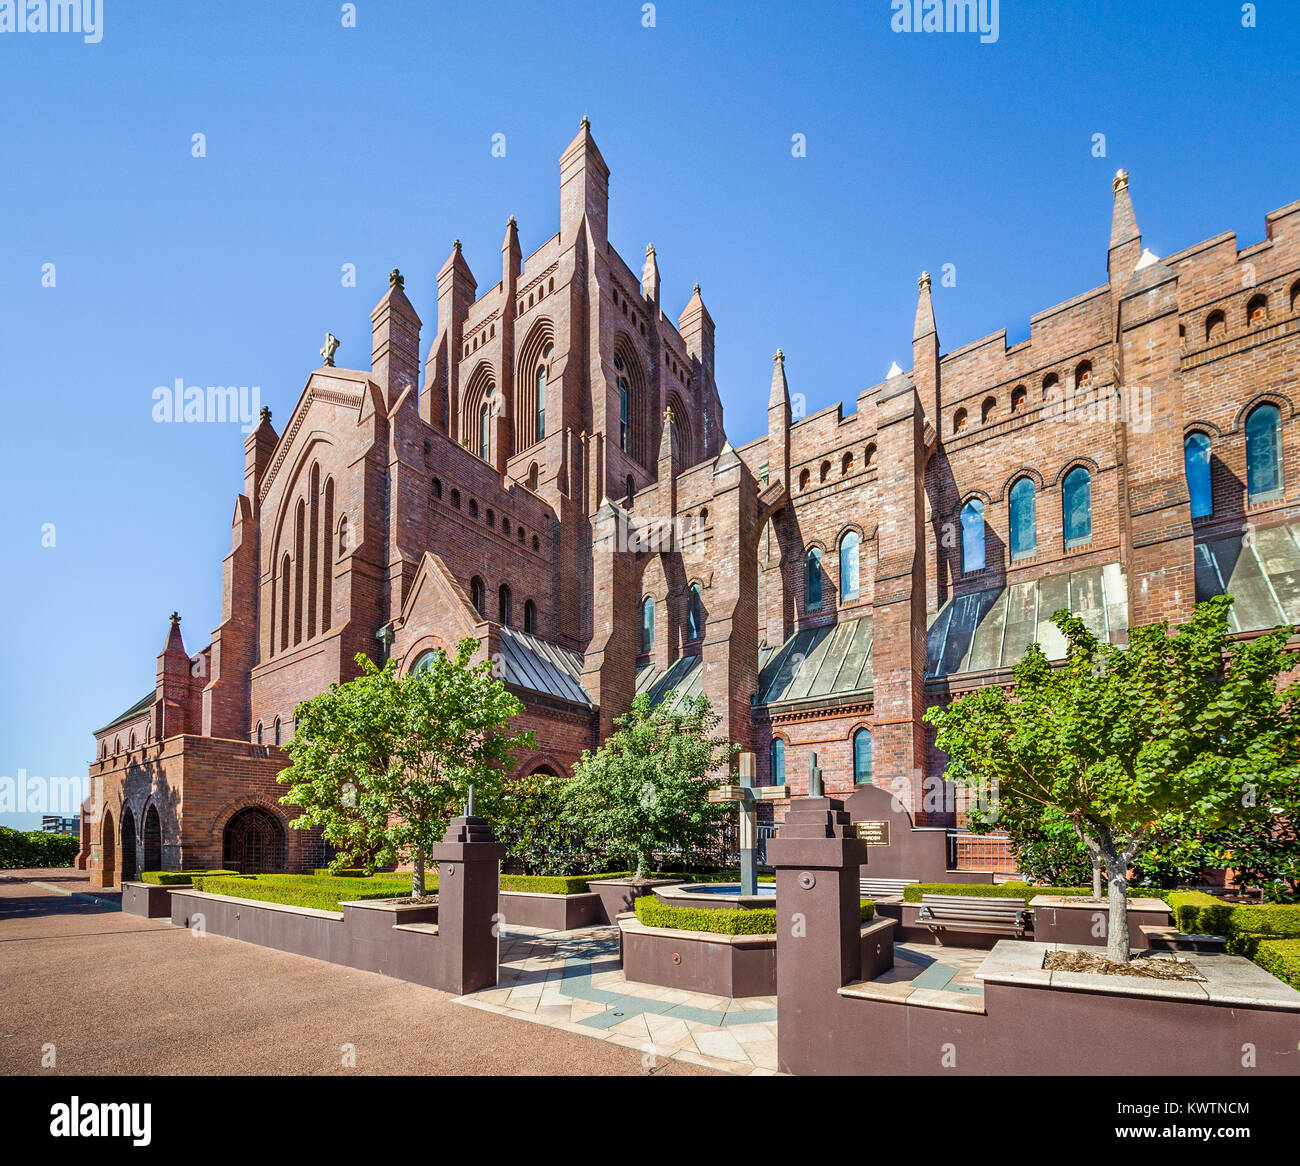 L'Australie, Nouvelle Galles du Sud, de Newcastle, de style néo-gothique de la cathédrale Christ Church (ou Cathédrale de l'Église du Christ Roi) Banque D'Images